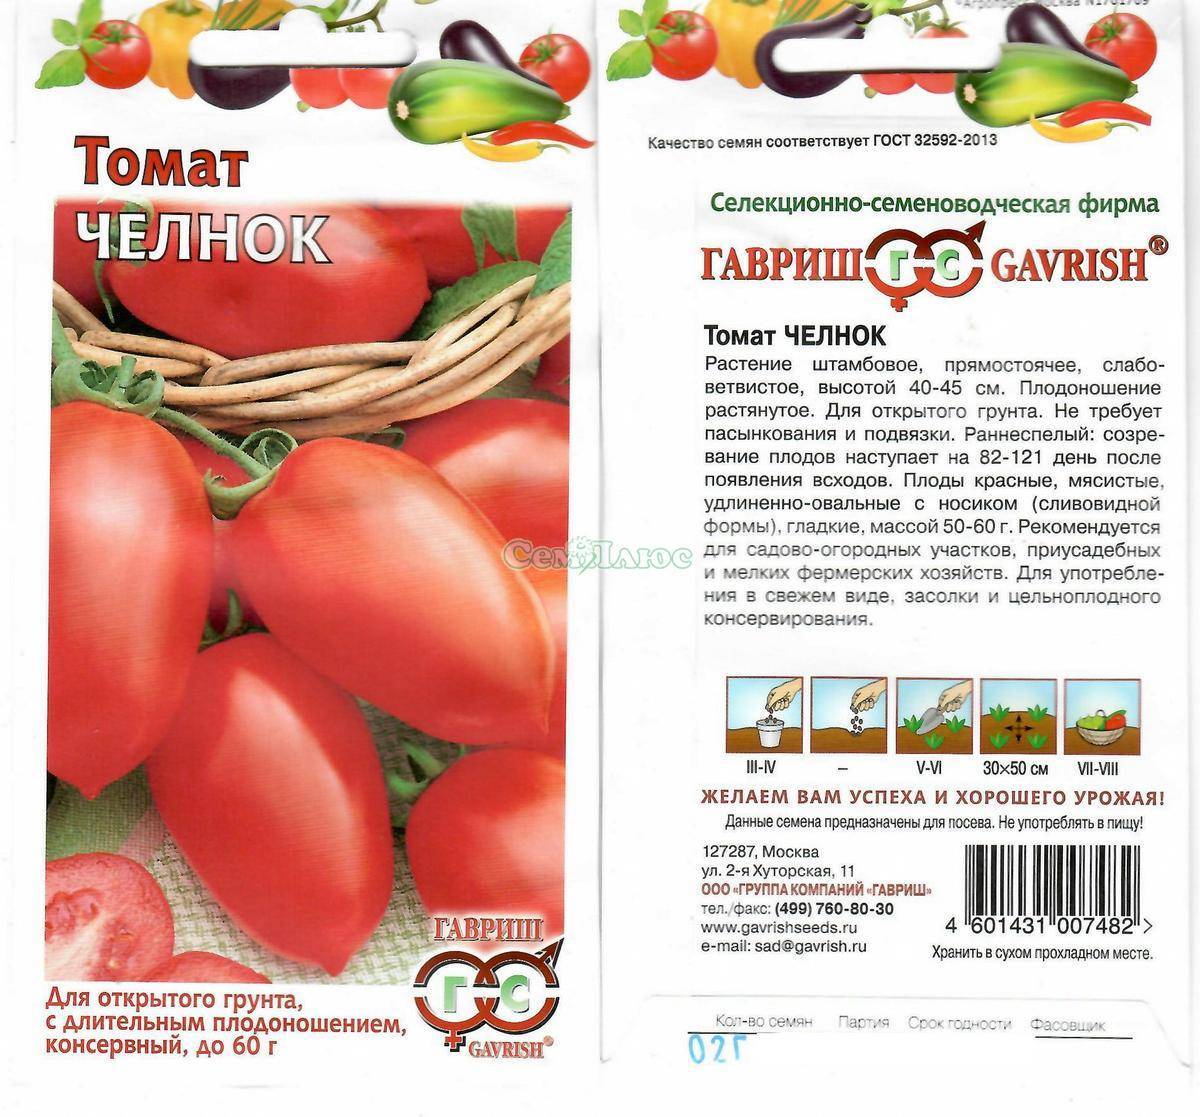 Томат челнок: описание и характеристика сорта, особенности выращивания помидоров, посадки на рассаду, отзывы, фото